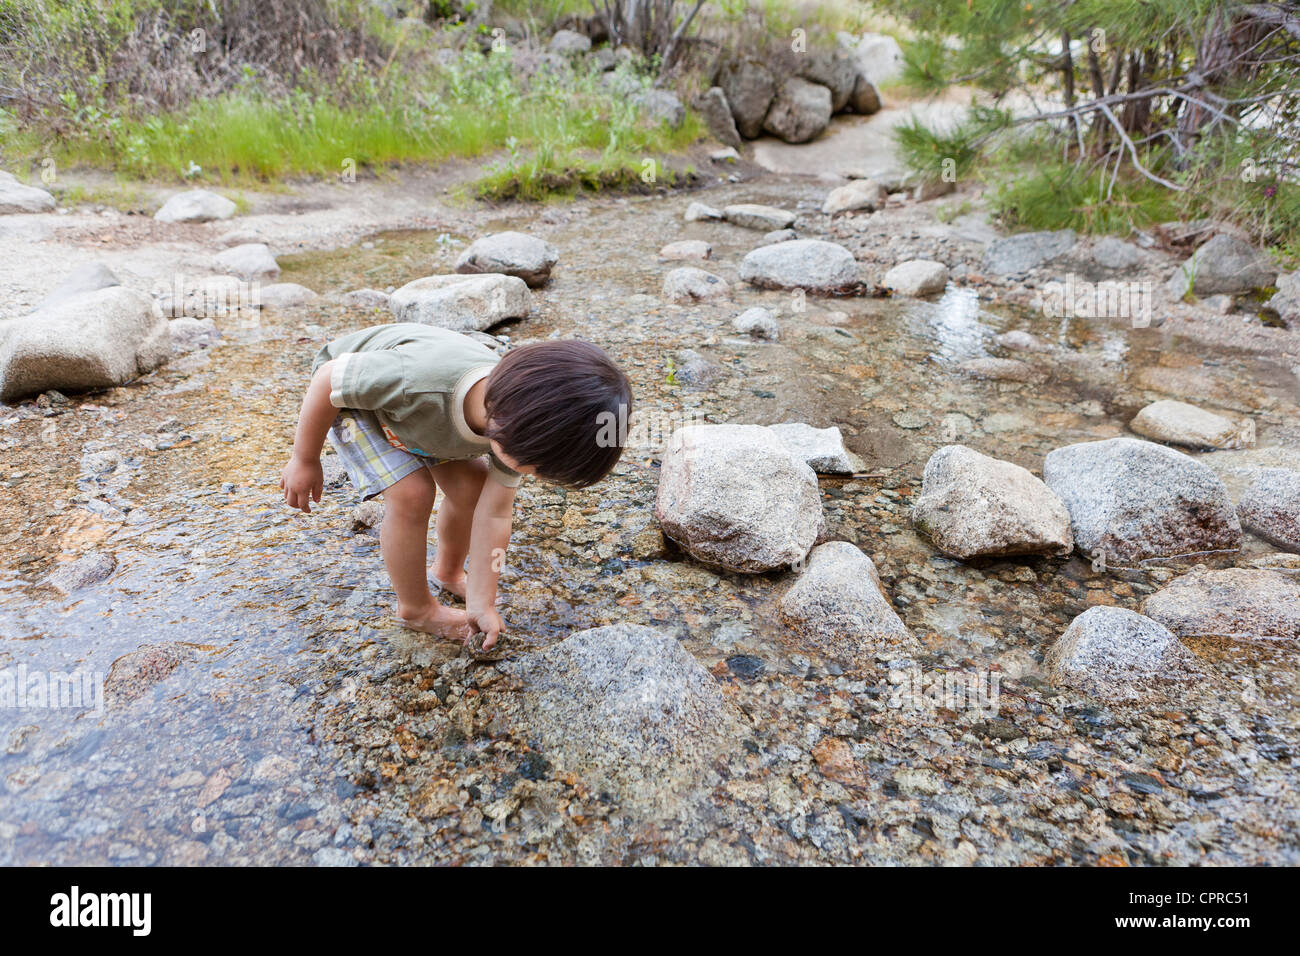 Kleine asiatische junge spielt in einem stream Stockfoto